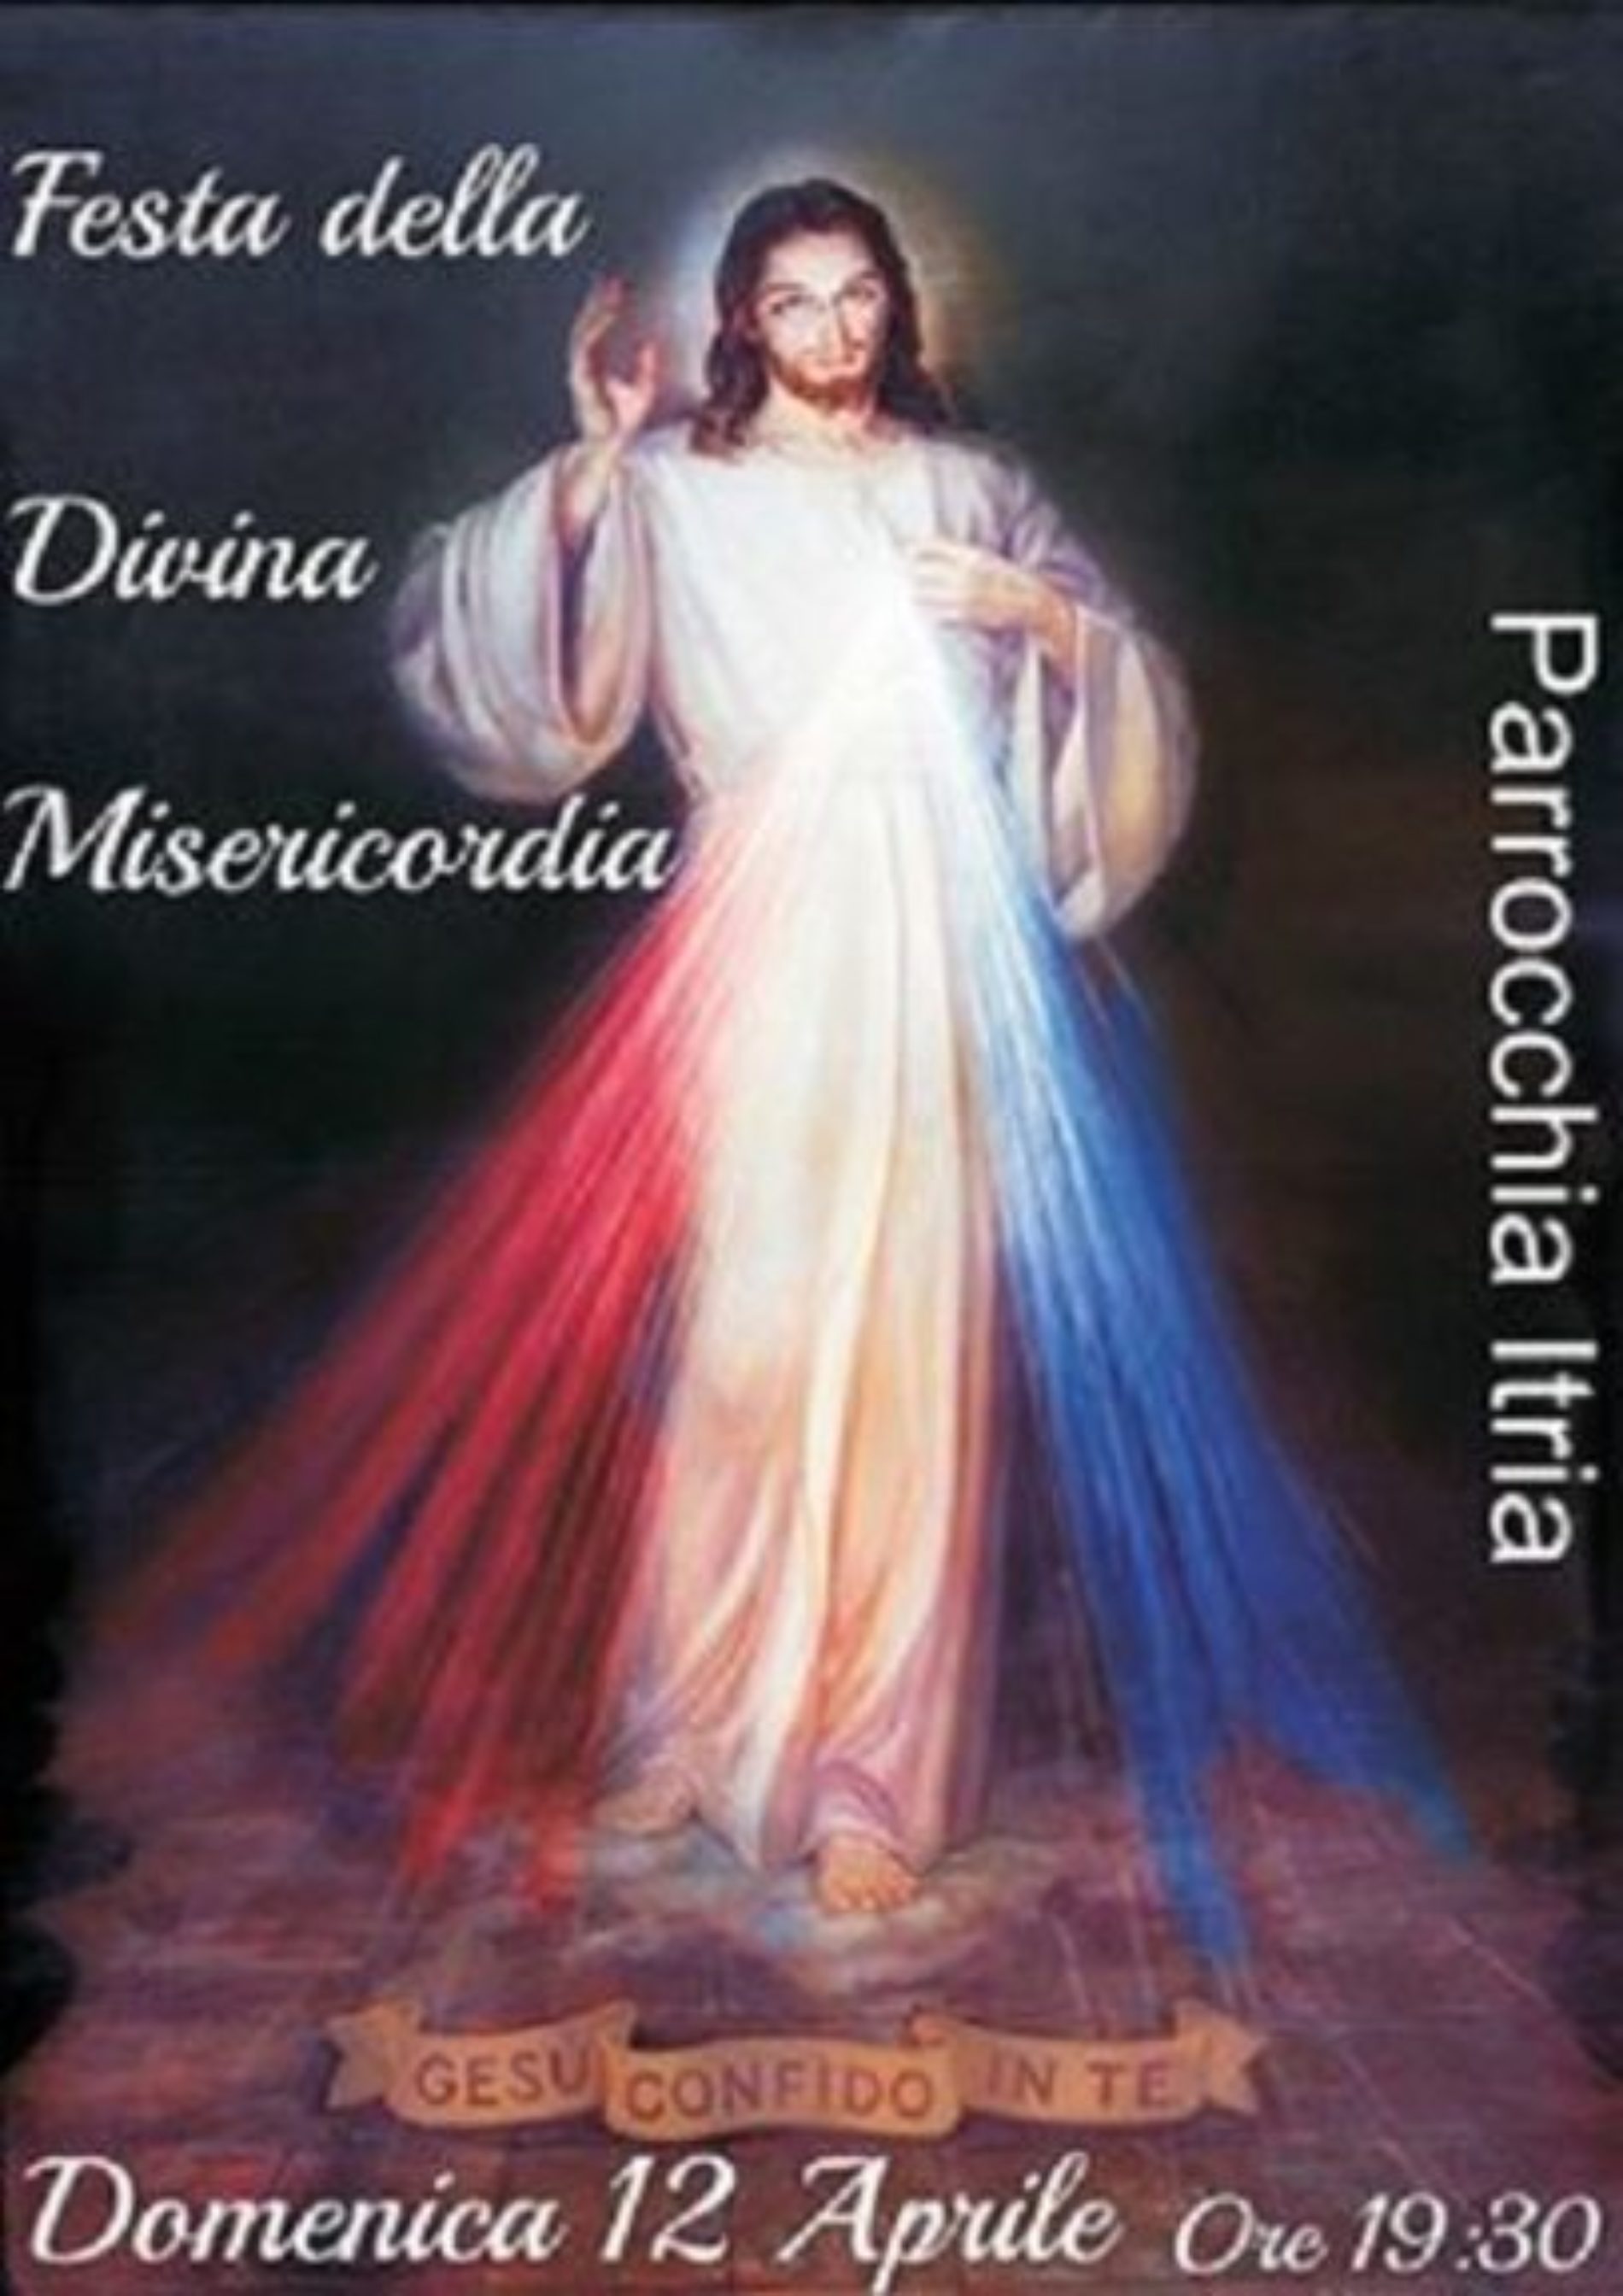 DOMENICA in ALBIS e Festa della Divina Misericordia- Chiesa Itria